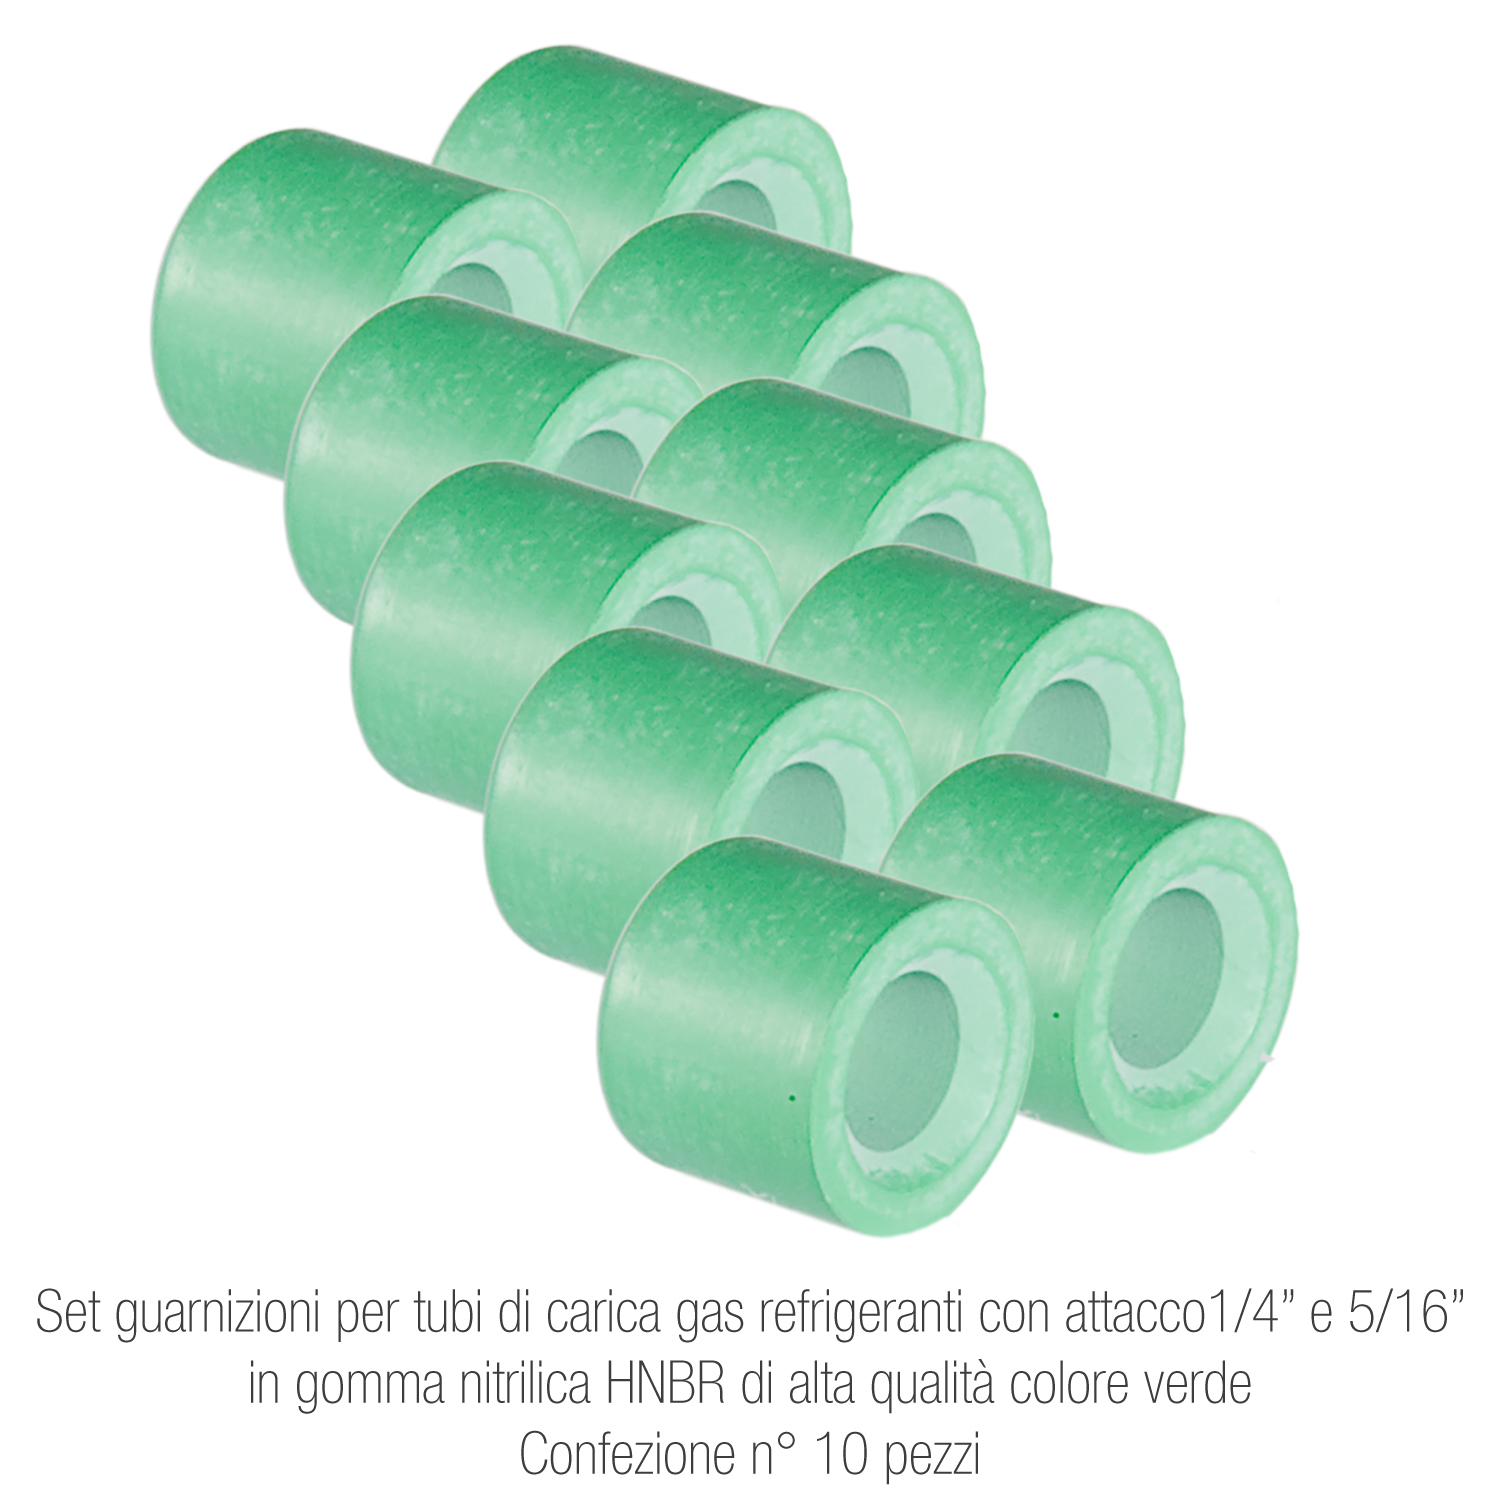 Set guarnizioni per tubi di carica gas refrigeranti - attacco ¼ e 5/16, in gomma nitrilica HNBR alta qualità colore verde - confezione n° 10 pezzi